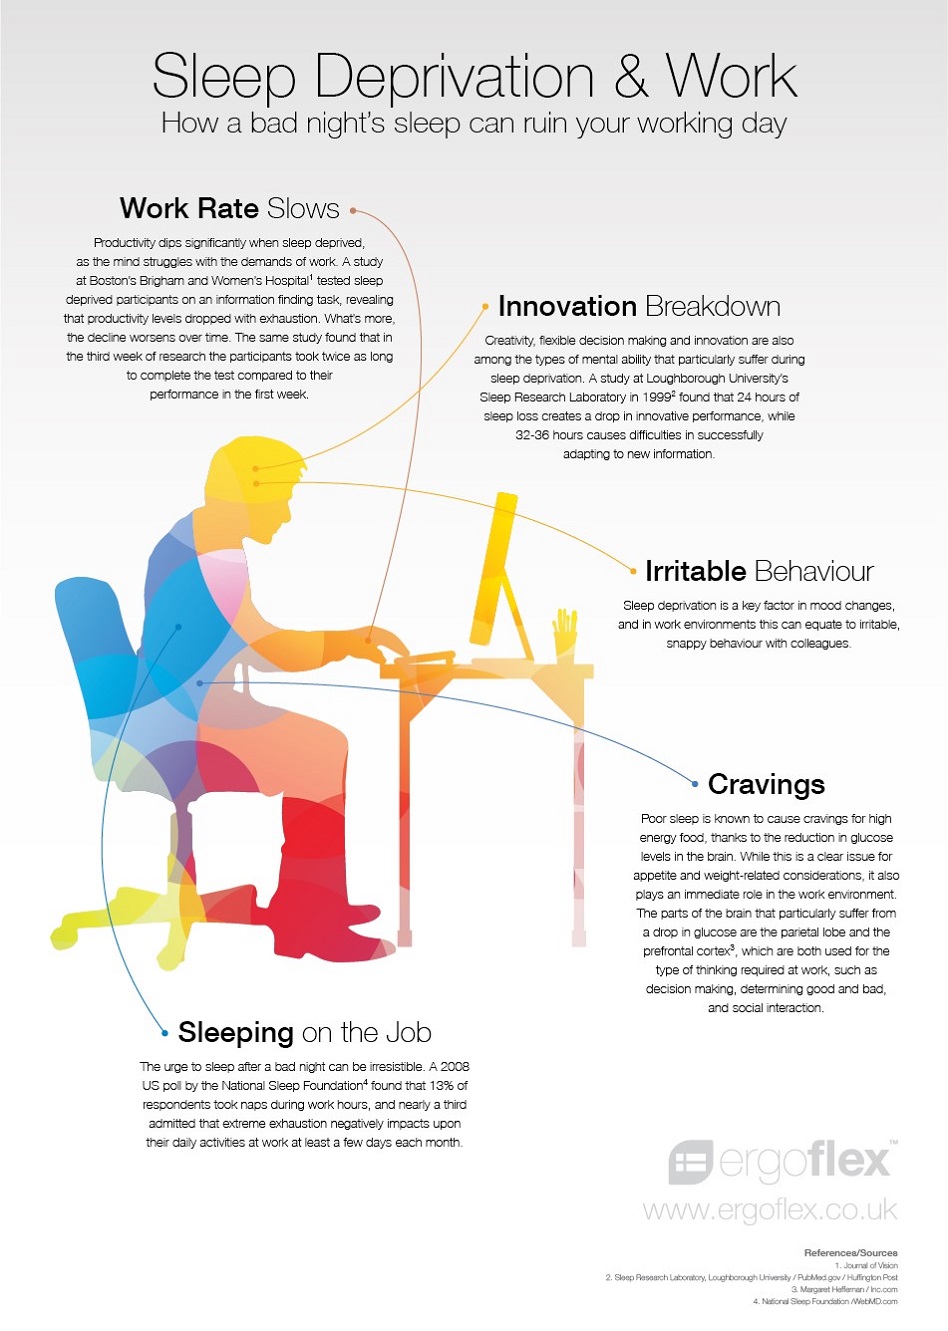 Les effets du manque de repos sur la capacité à travailler